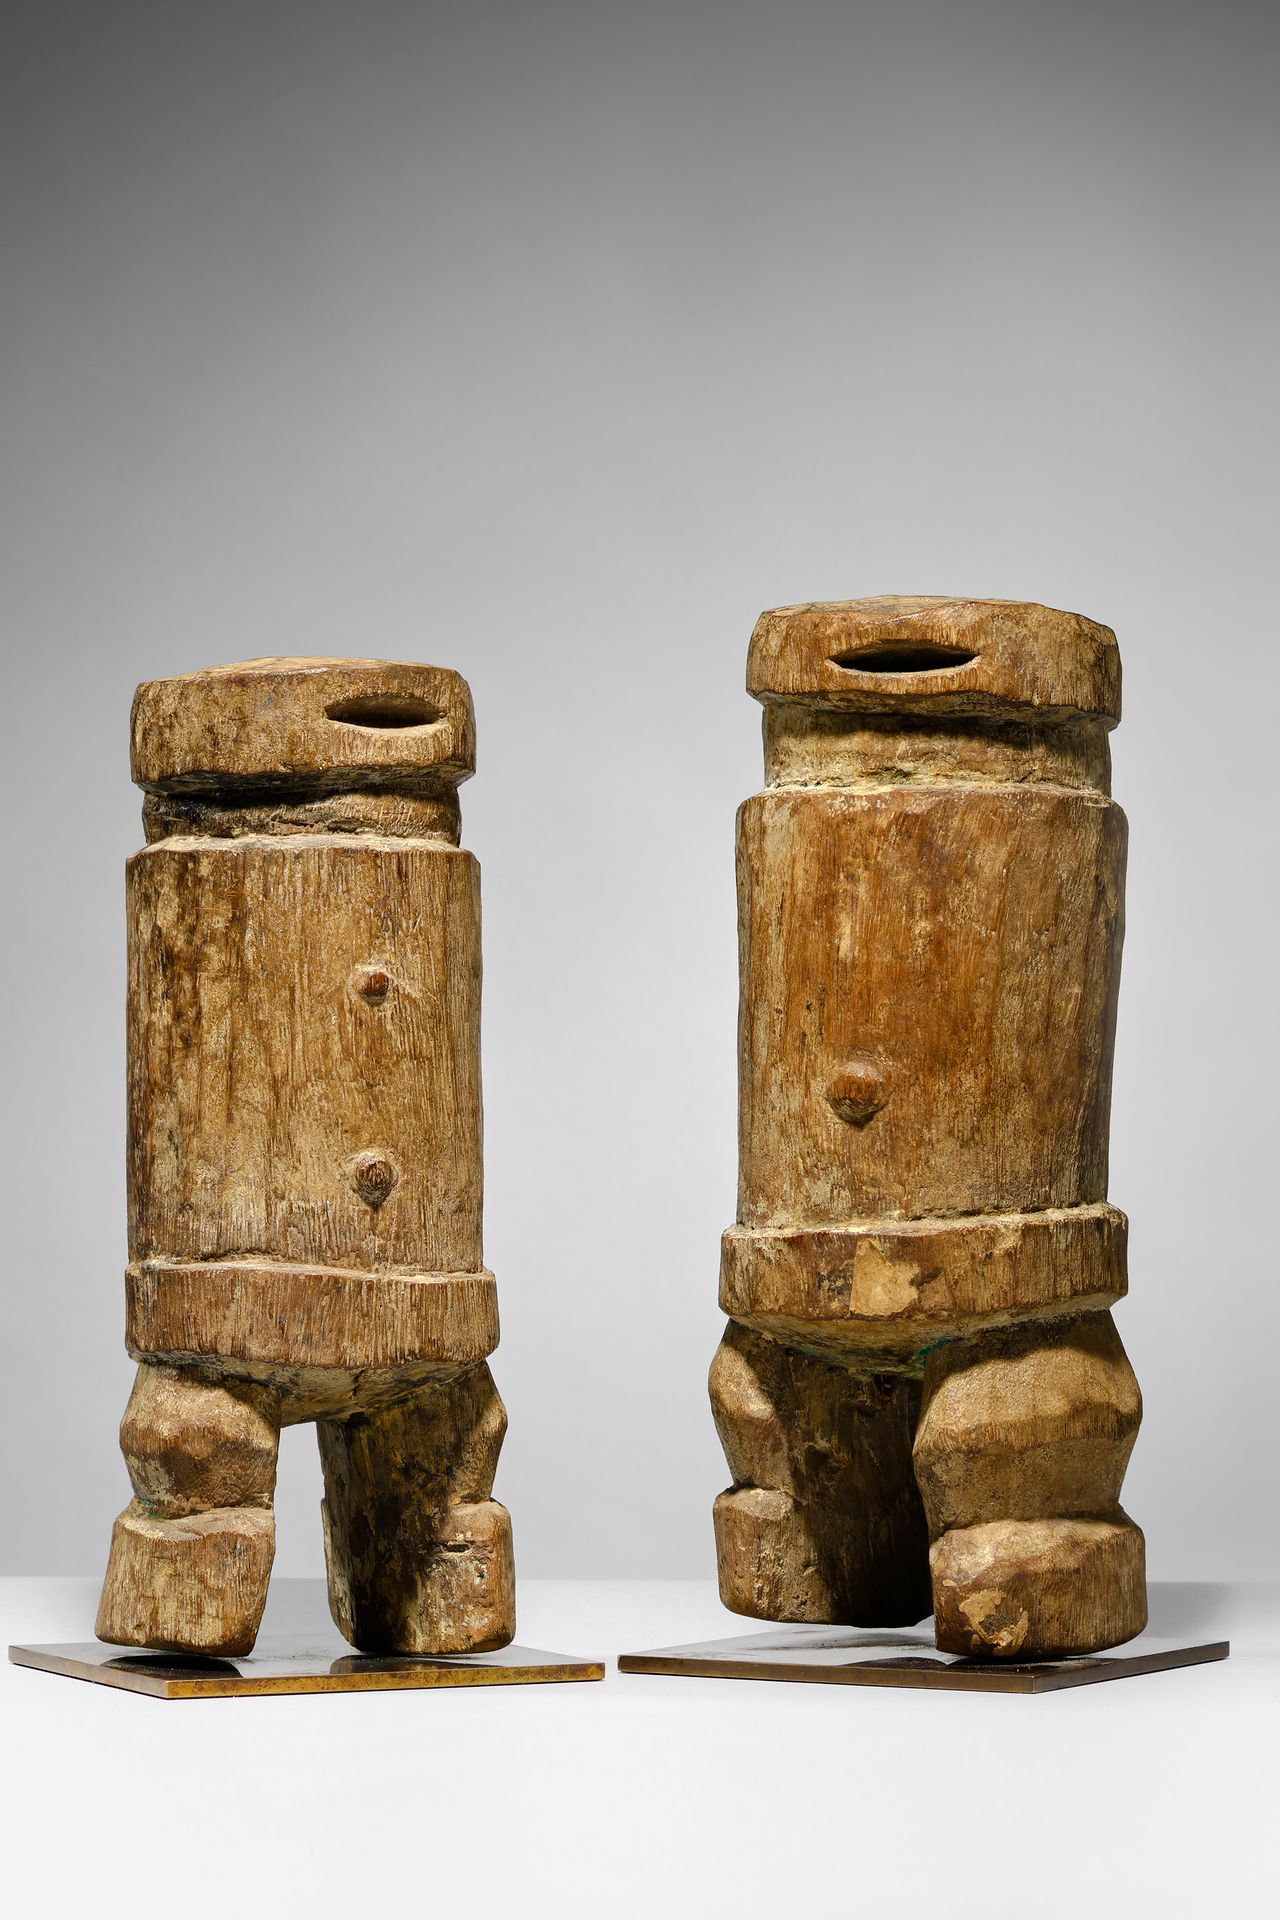 Losso Togo

Holz - 31 cm und 29,5 cm

Herkunft:

Private Sammlung, Frankreich